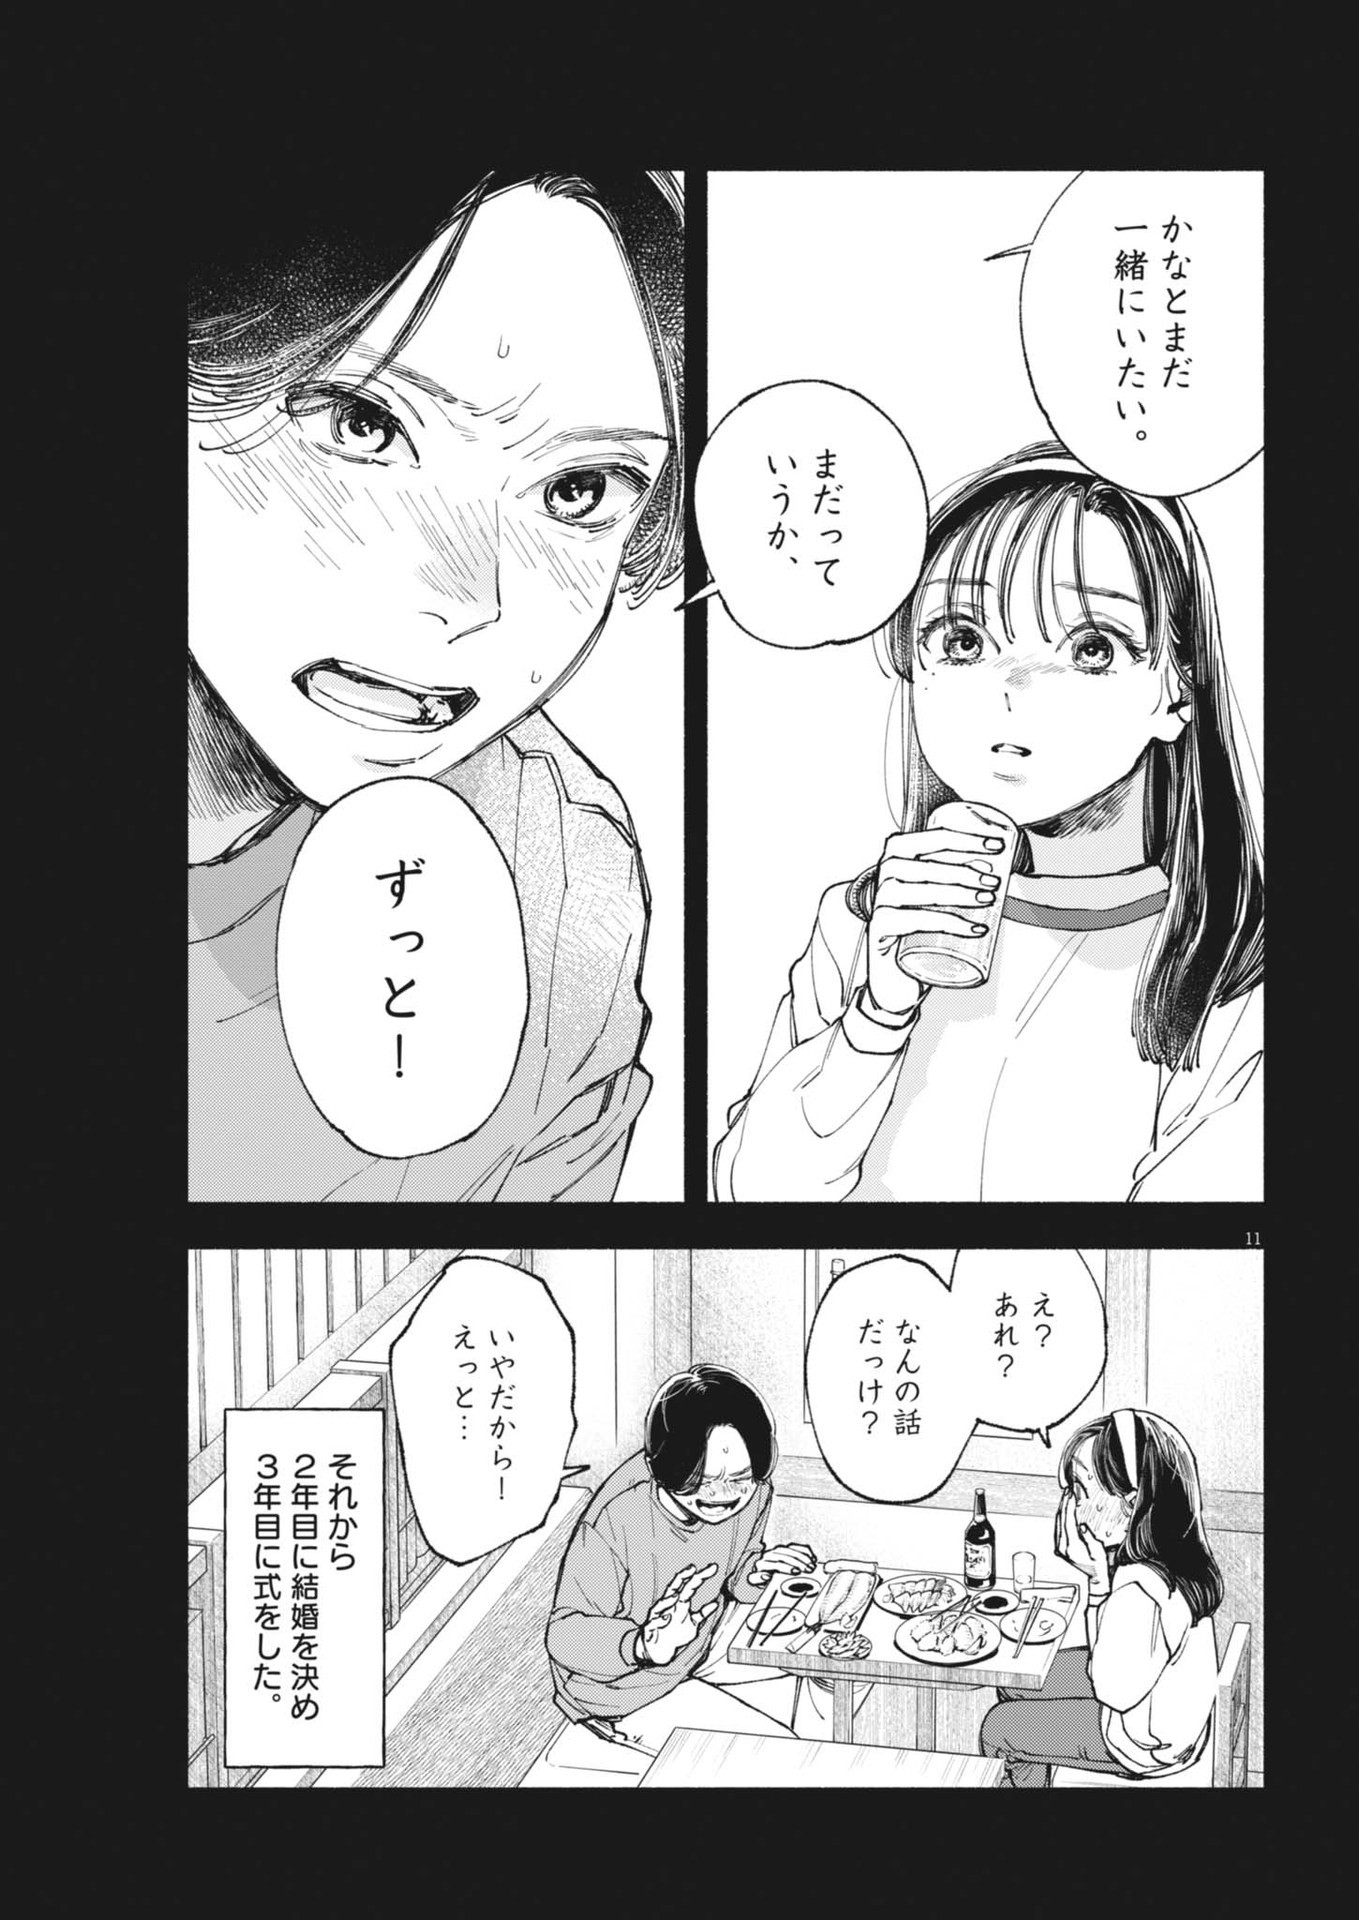 Konoyo wa Tatakau Kachi ga Aru  - Chapter 26 - Page 11